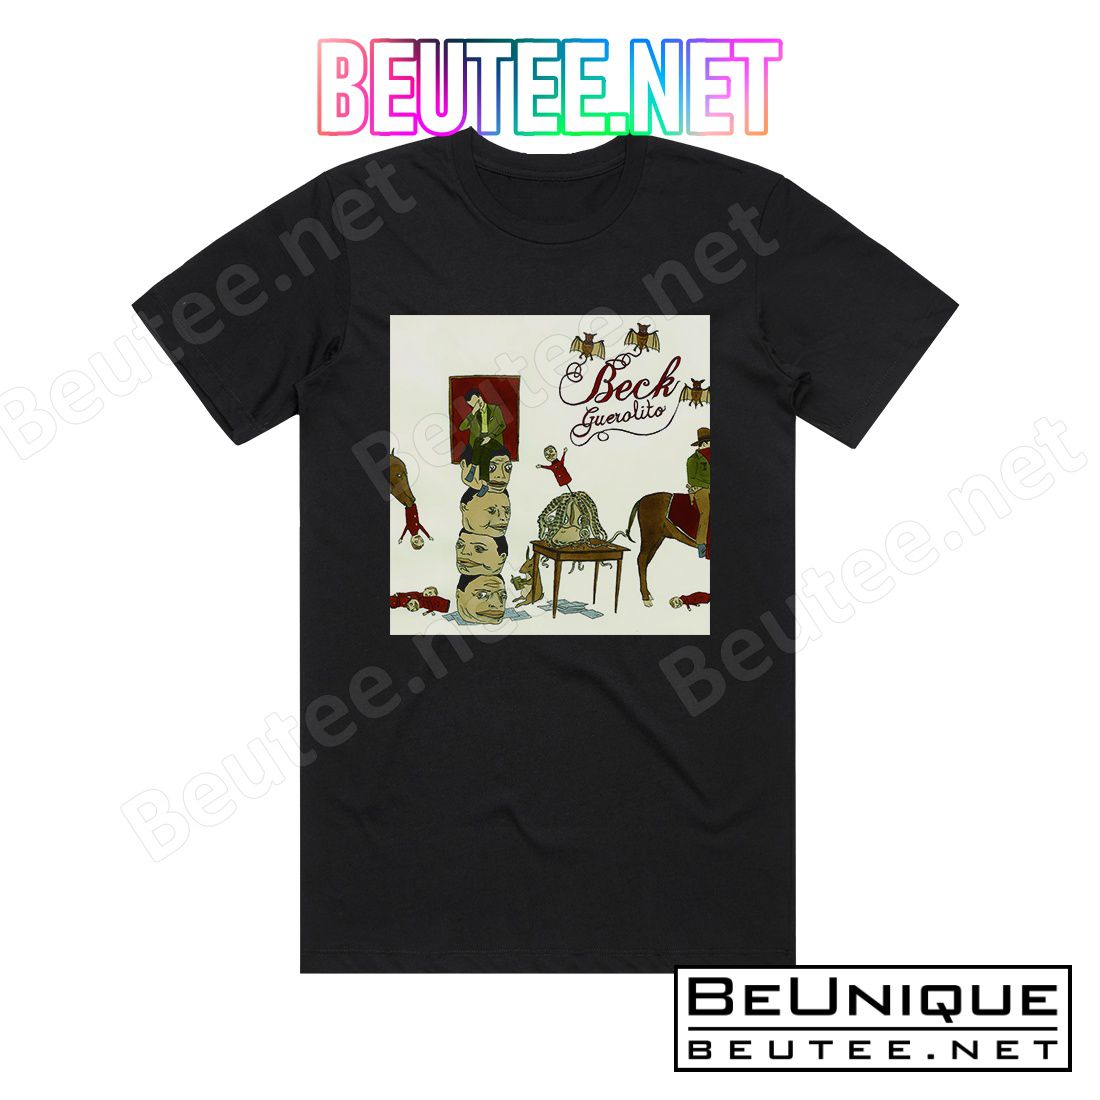 Beck Guerolito Album Cover T-Shirt